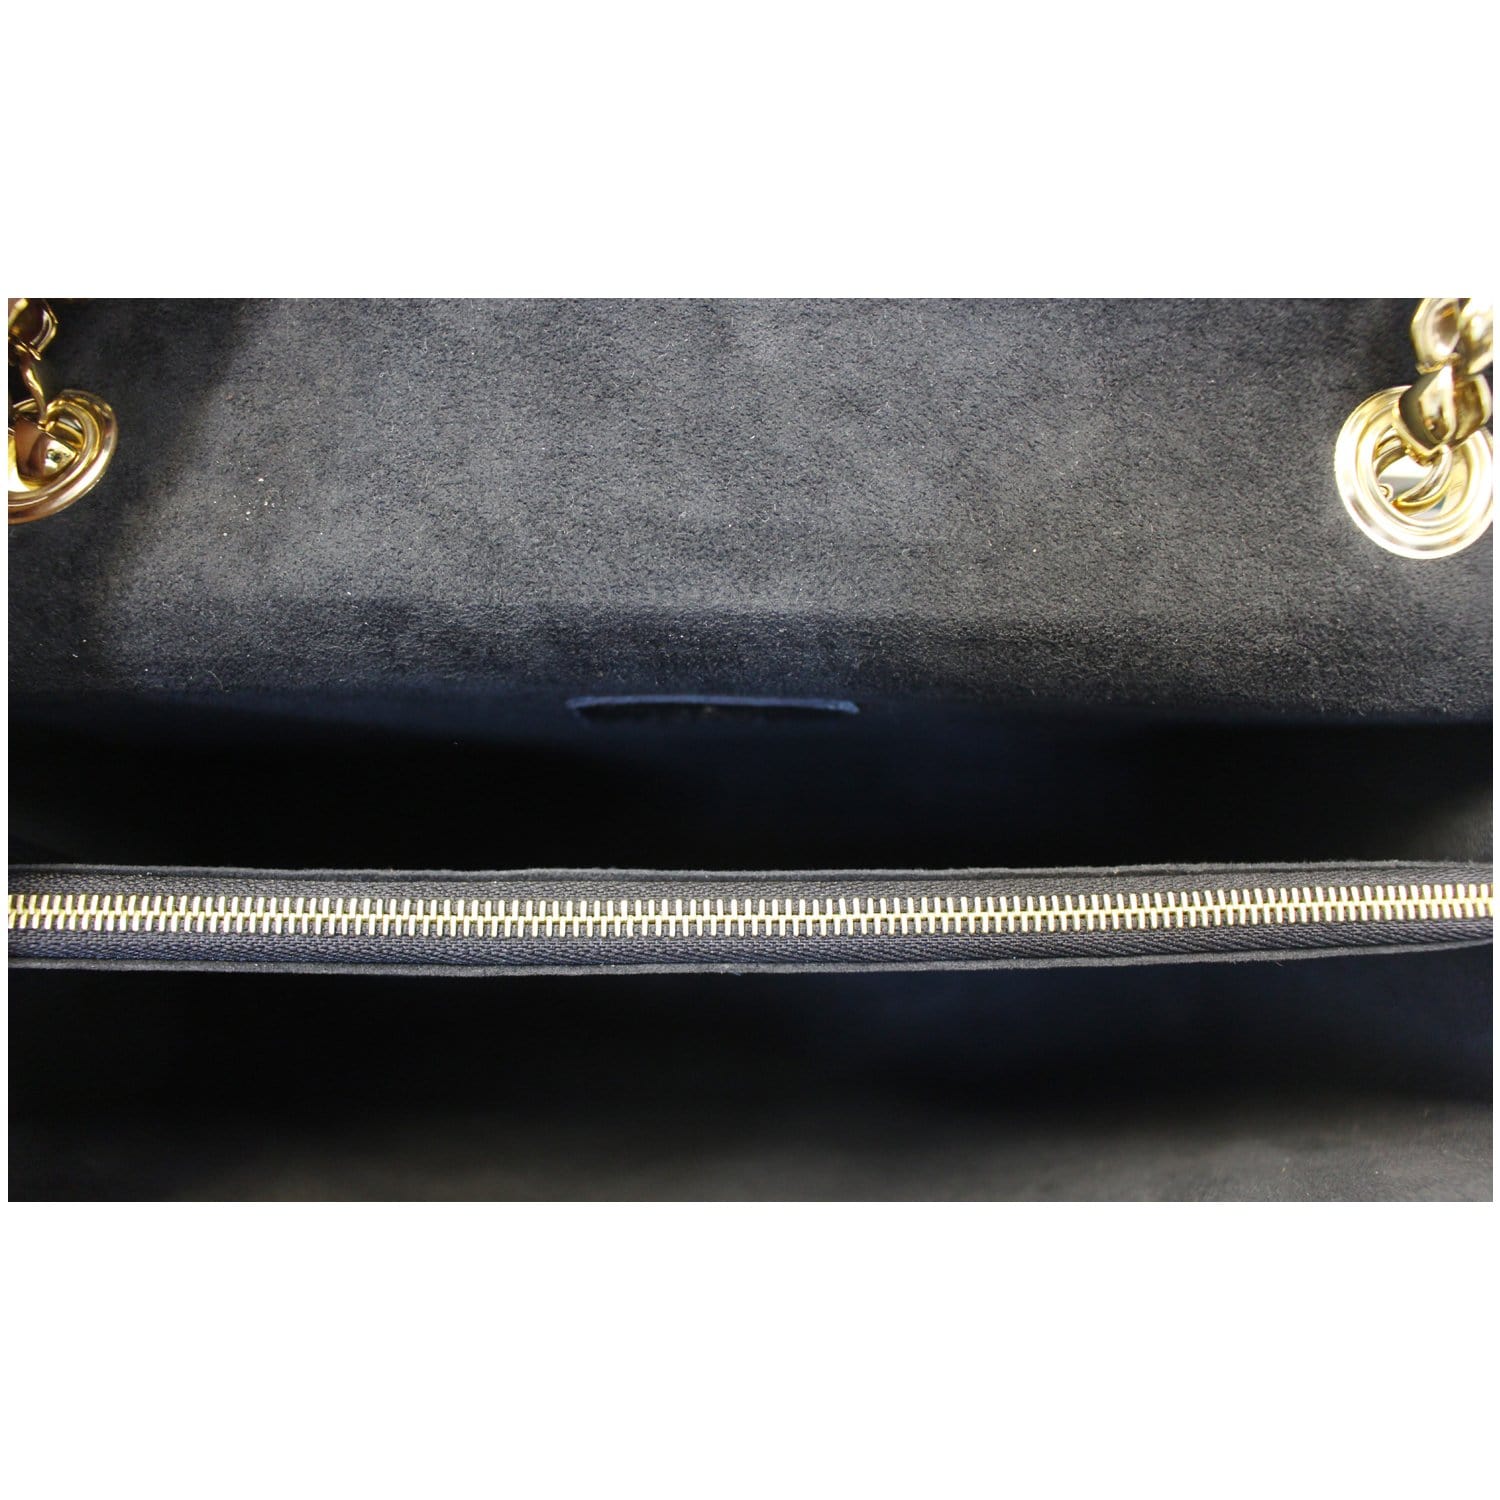 LV Louis Vuitton Victoire Chain Handbag Monogram Leather Shoulder Bag Black  M41730 6805 [LV1480] - $339.00